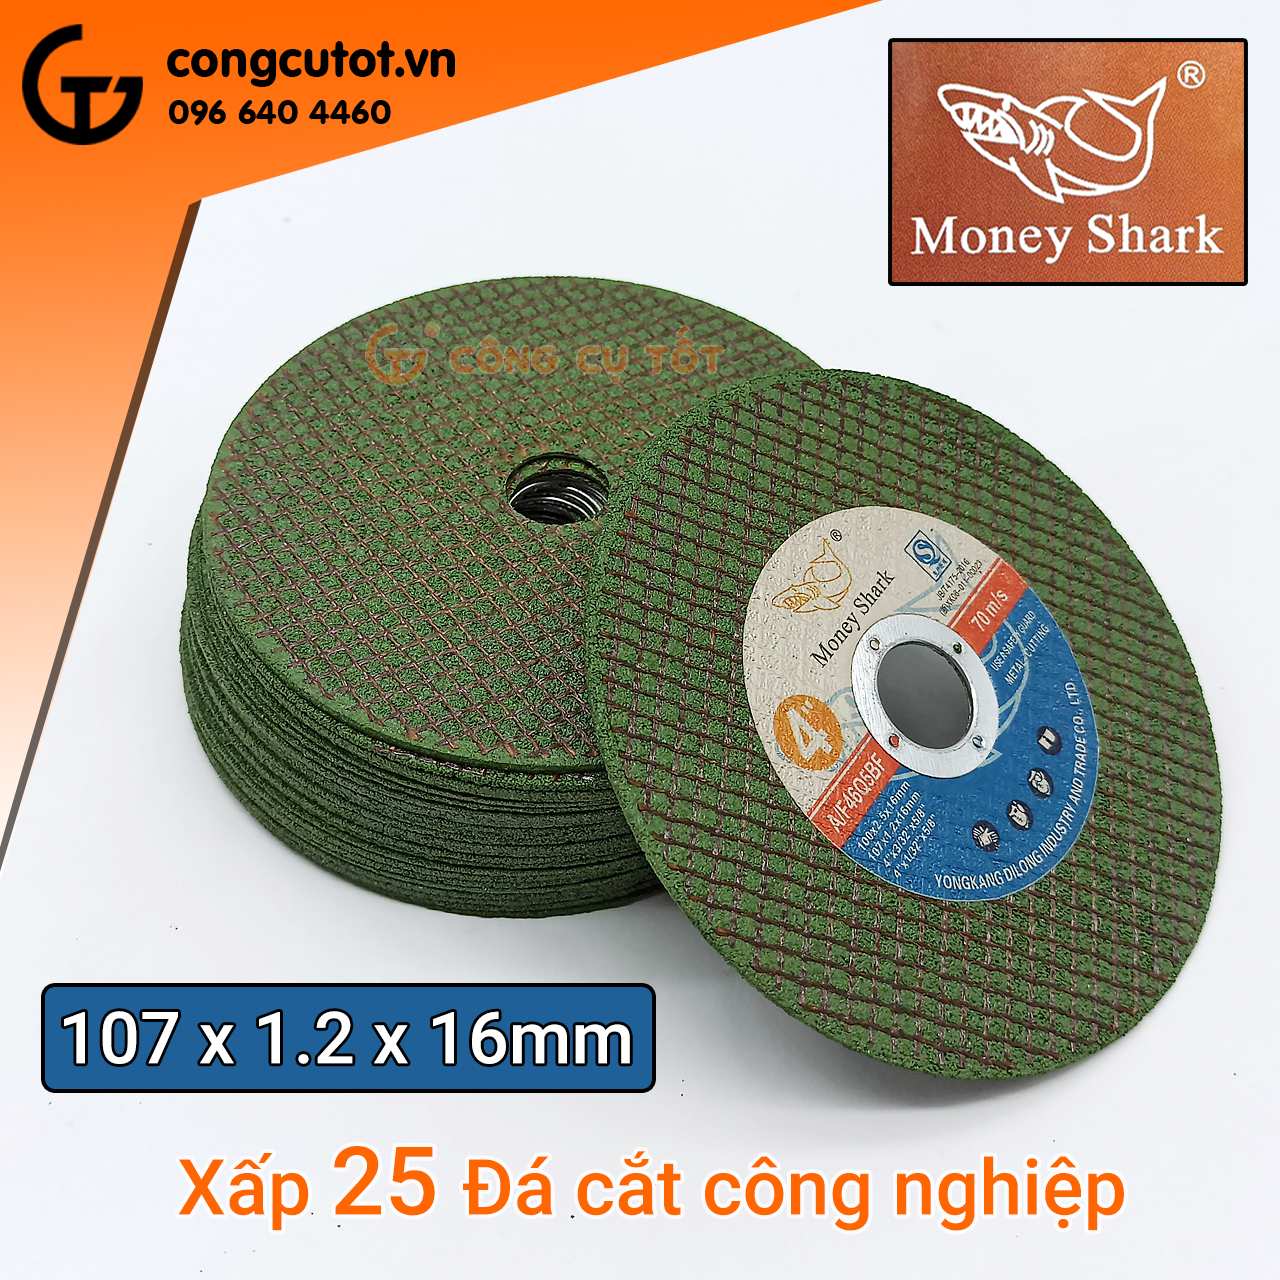 CÔNG CỤ TỐT phân phối 1 xấp gồm 25 Đá cắt công nghiệp 107 x 1.2 x 16mm Money Shark xanh